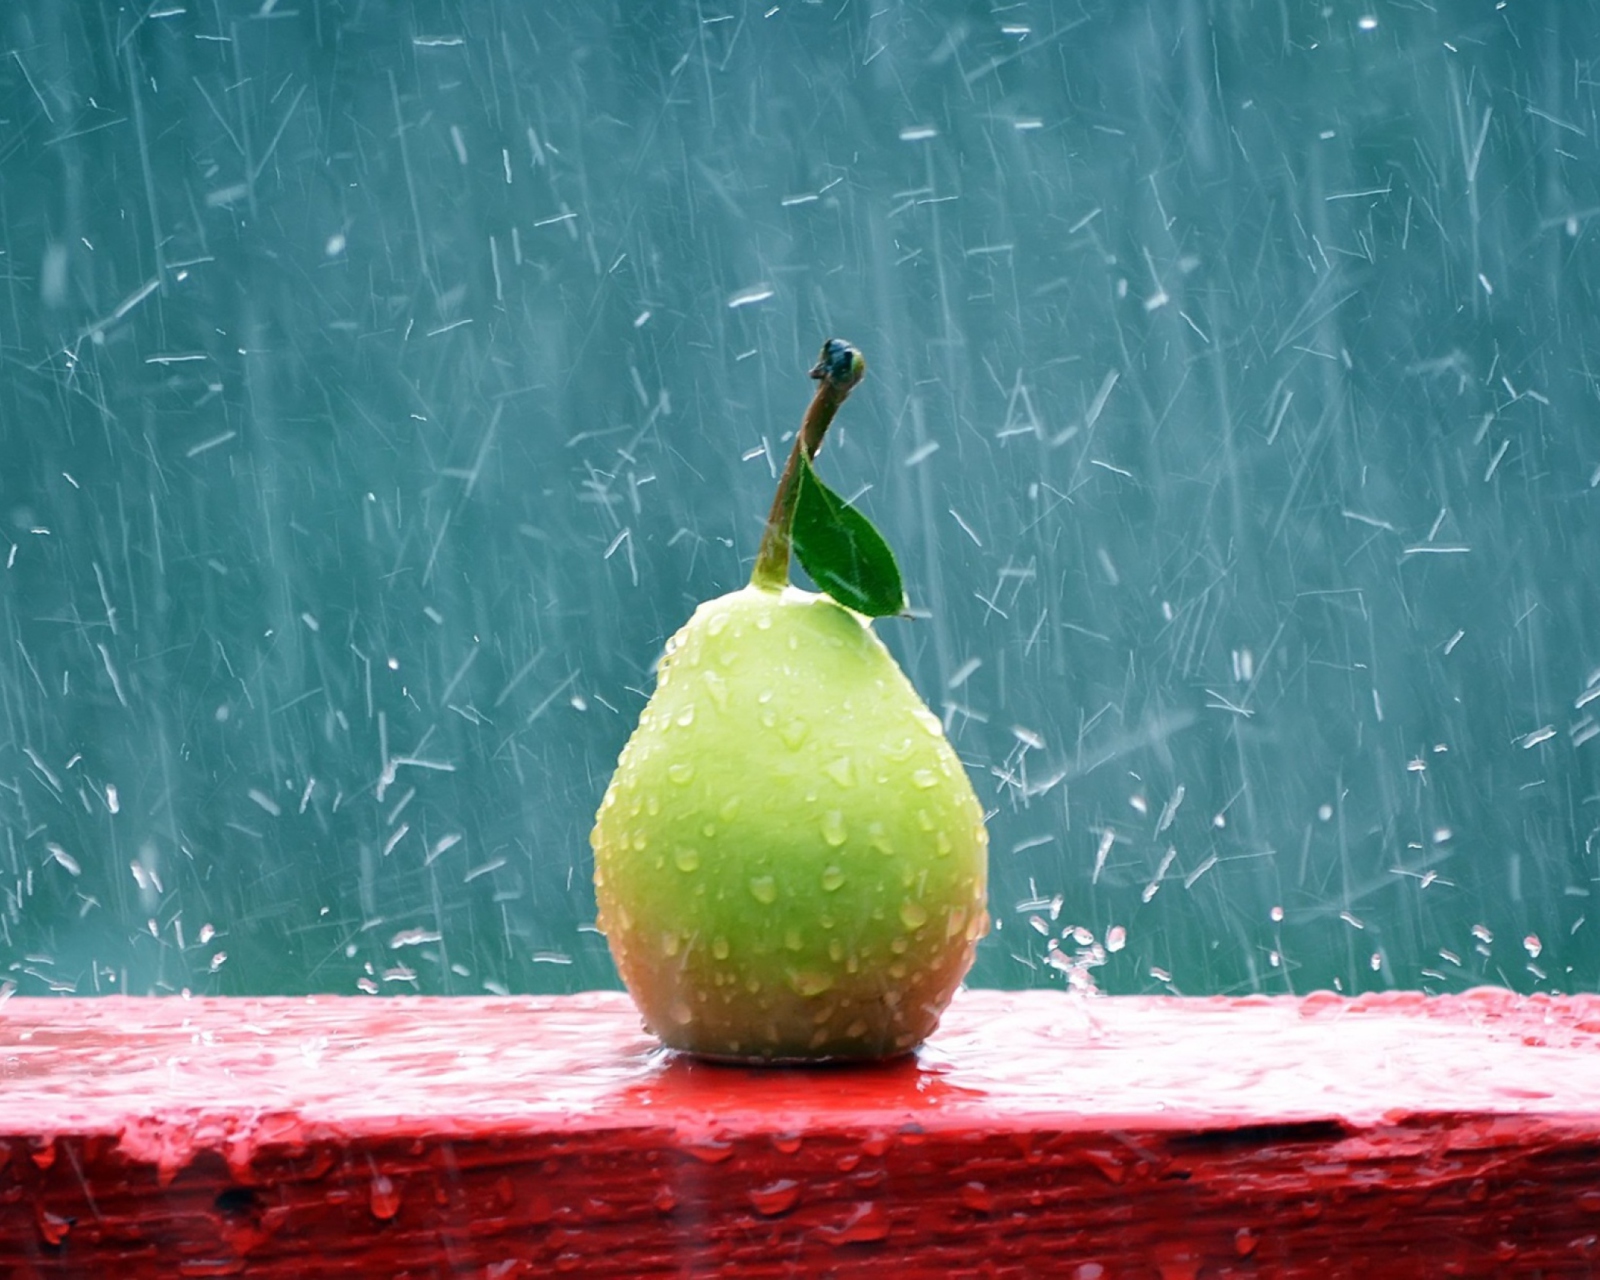 Обои Green Pear In The Rain 1600x1280